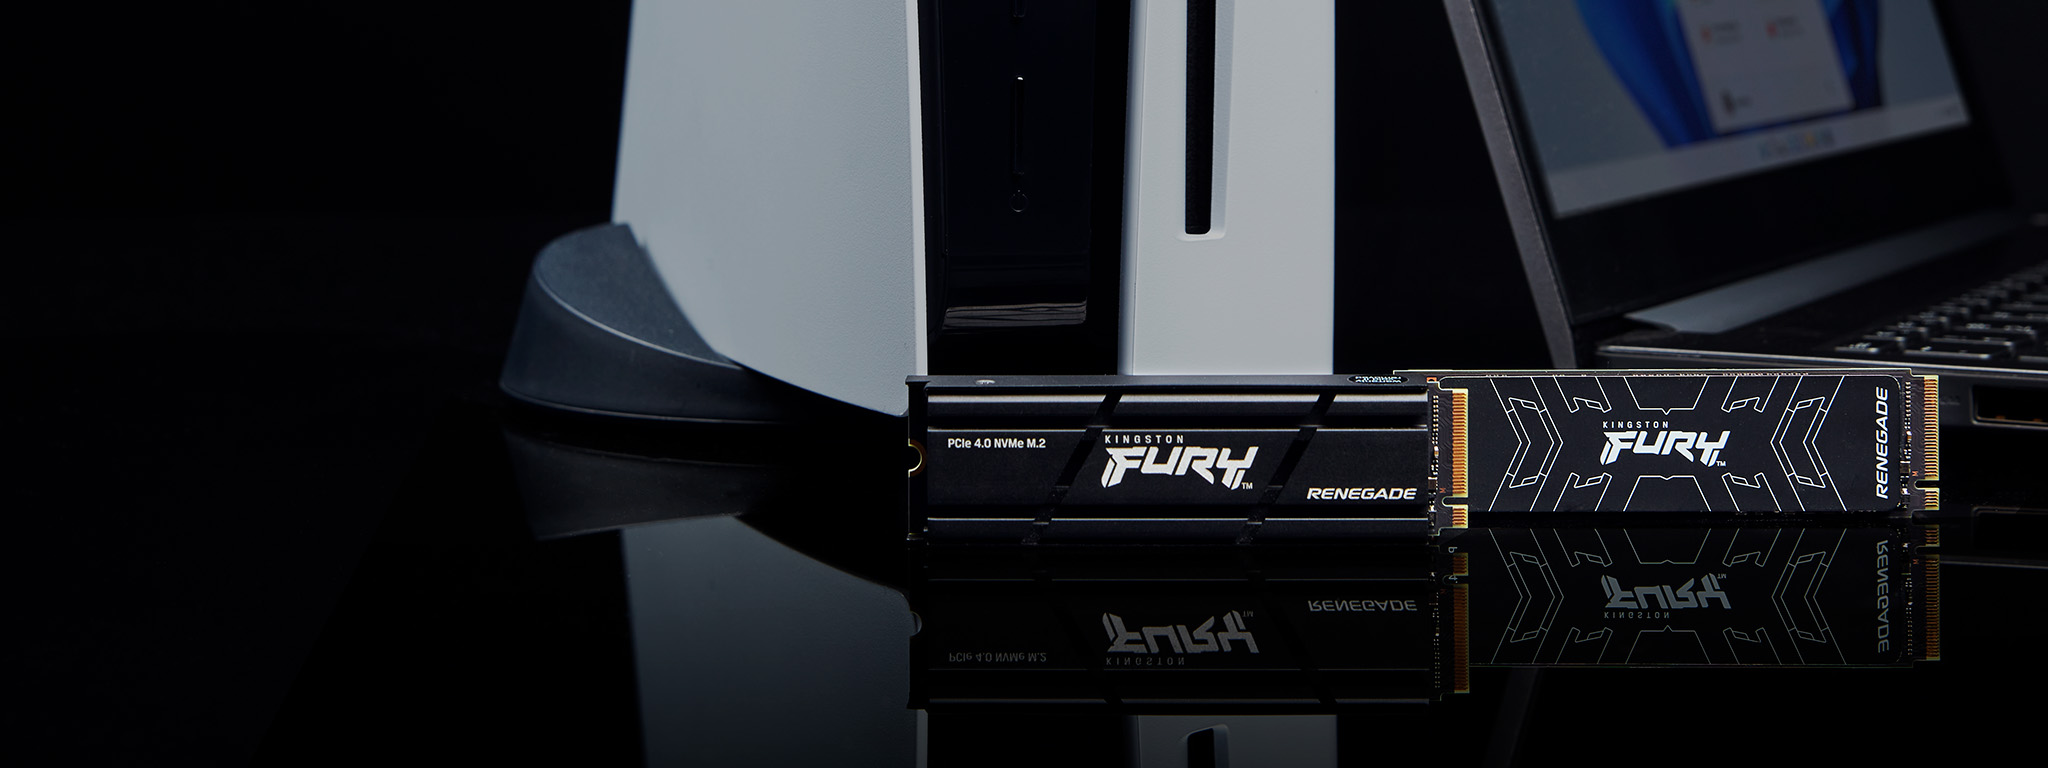 兩個 Kingston FURY Renegade SSD 固態硬碟 (有無散熱器的差異) 置於 PS5 和筆記型電腦旁。